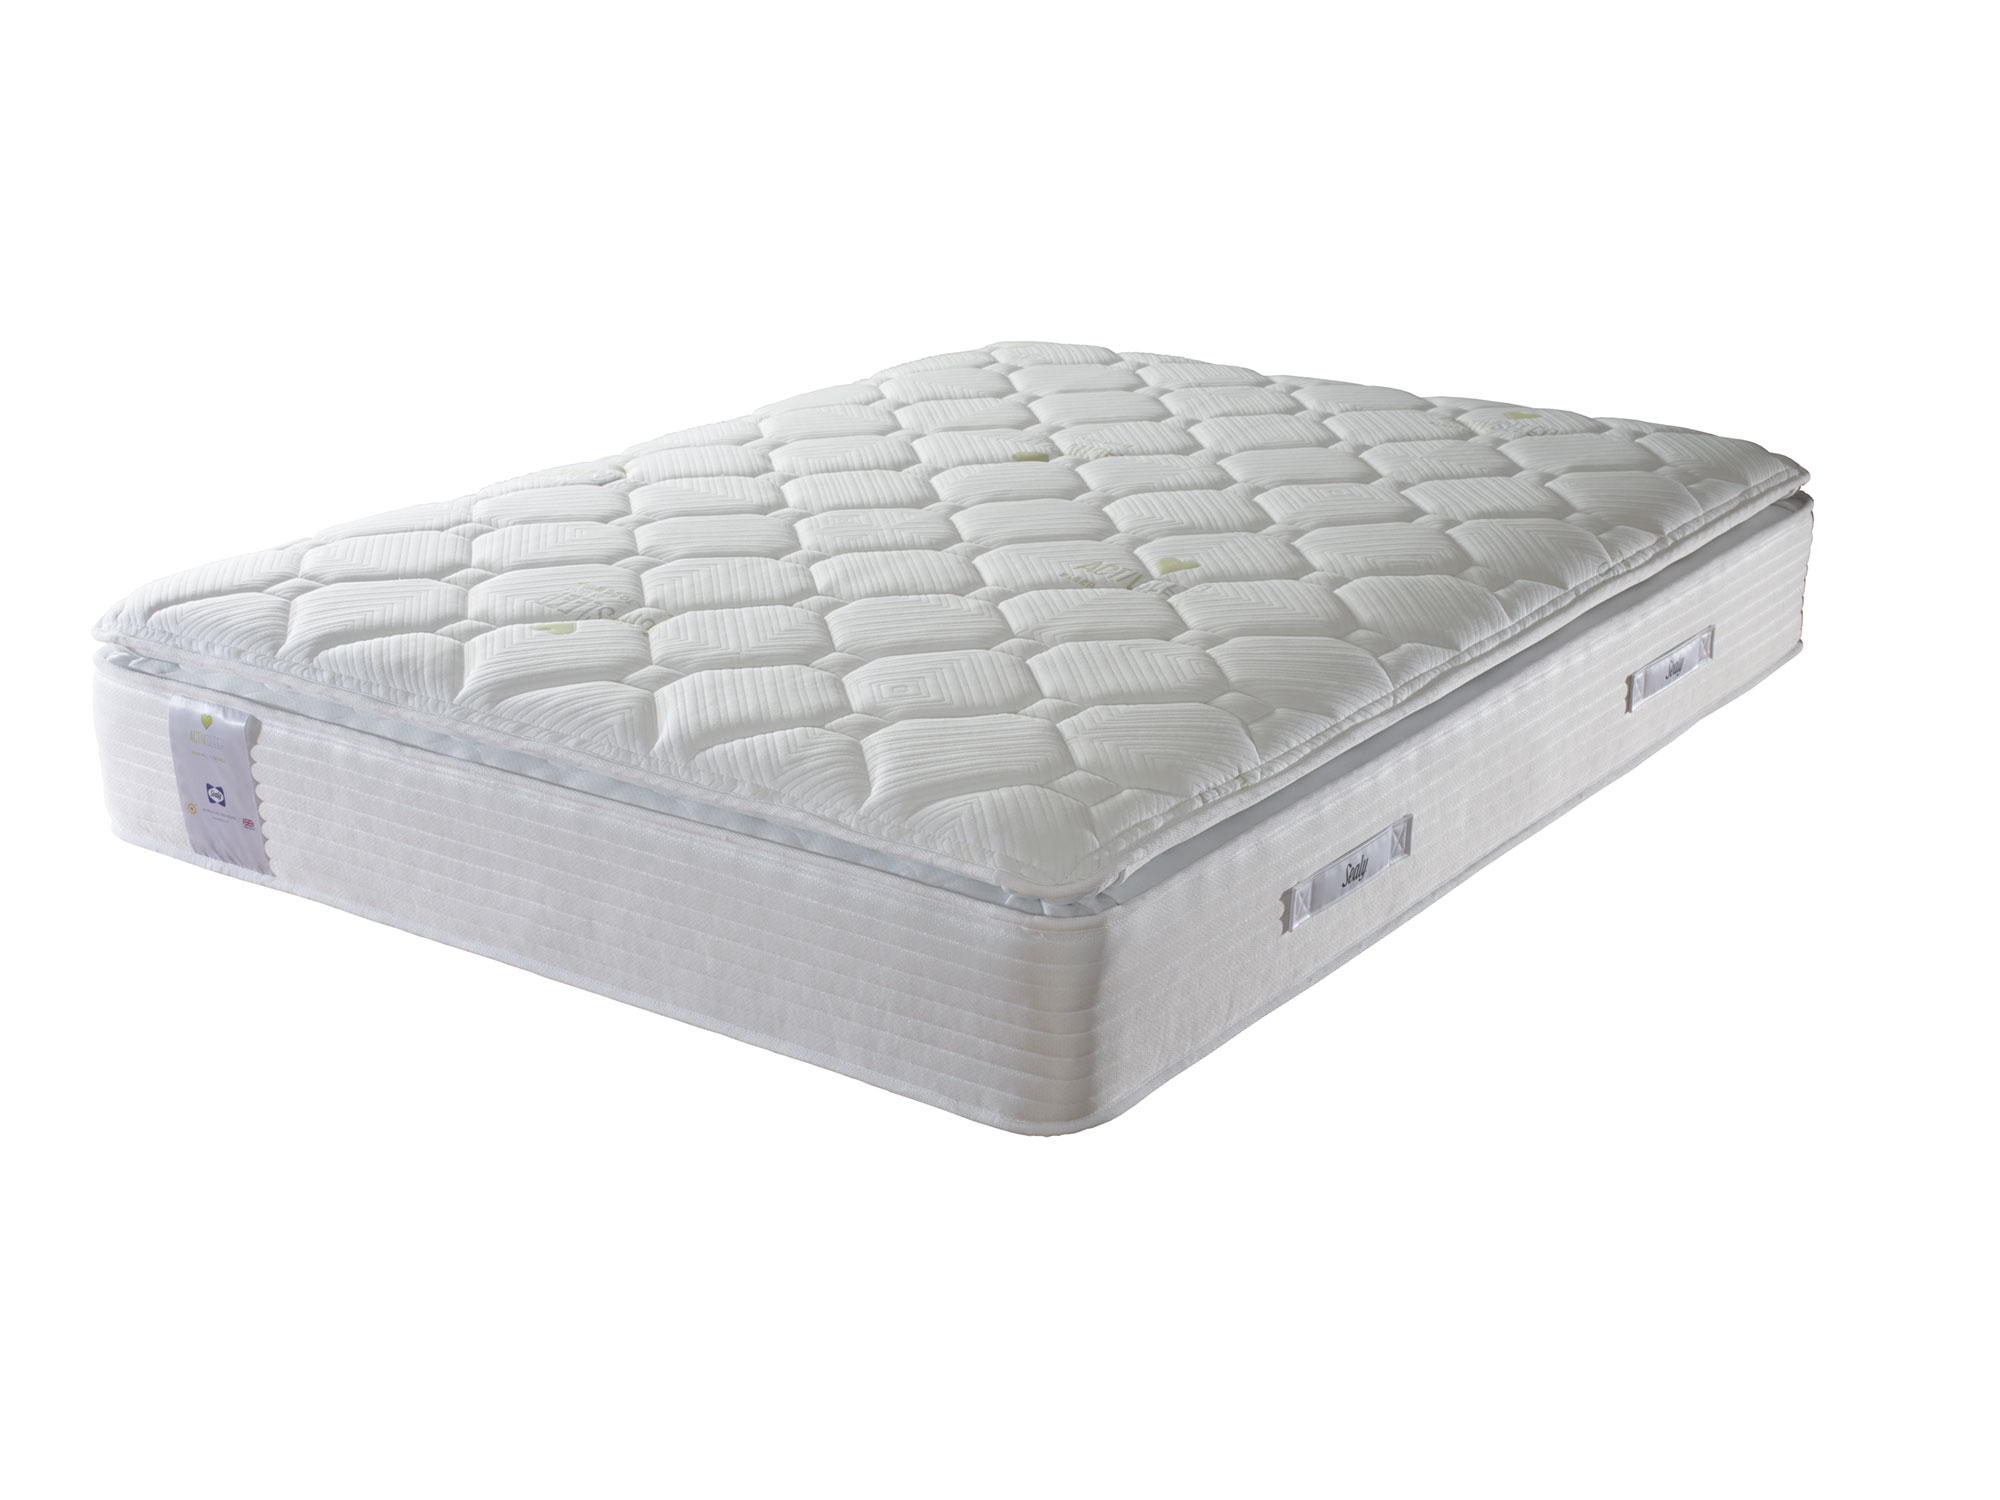 4ft6 Double Sealy ActivSleep Geltex Pocket Pillow Top 2200 Mattress